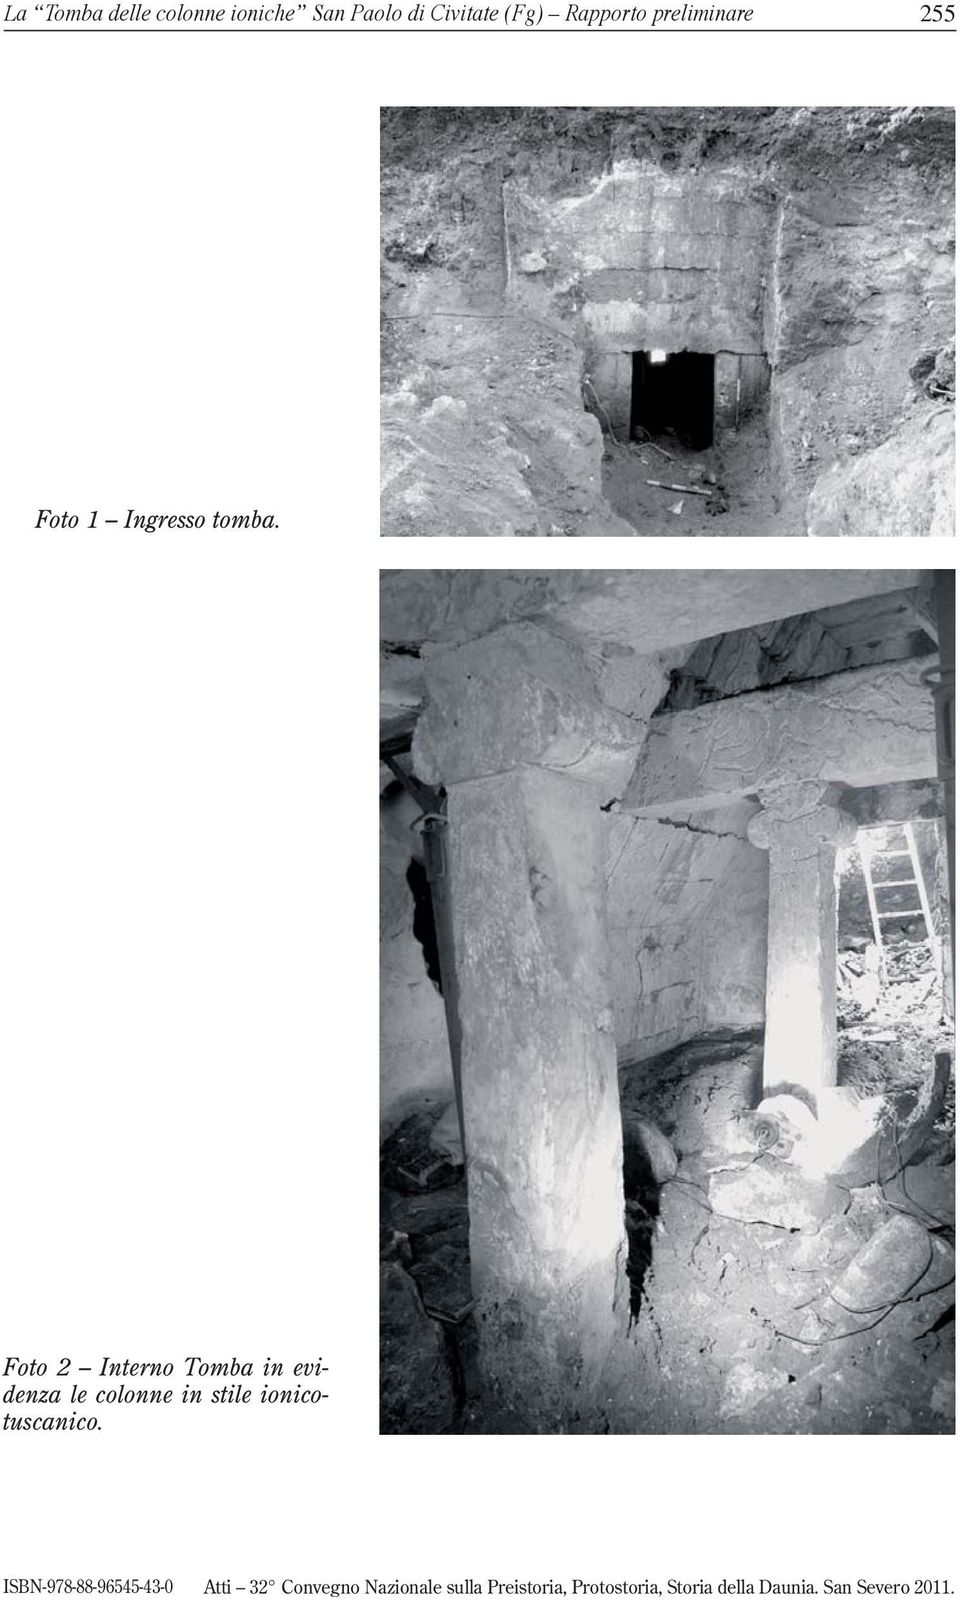 Foto 2 Interno Tomba in evidenza le colonne in stile ionicotuscanico.